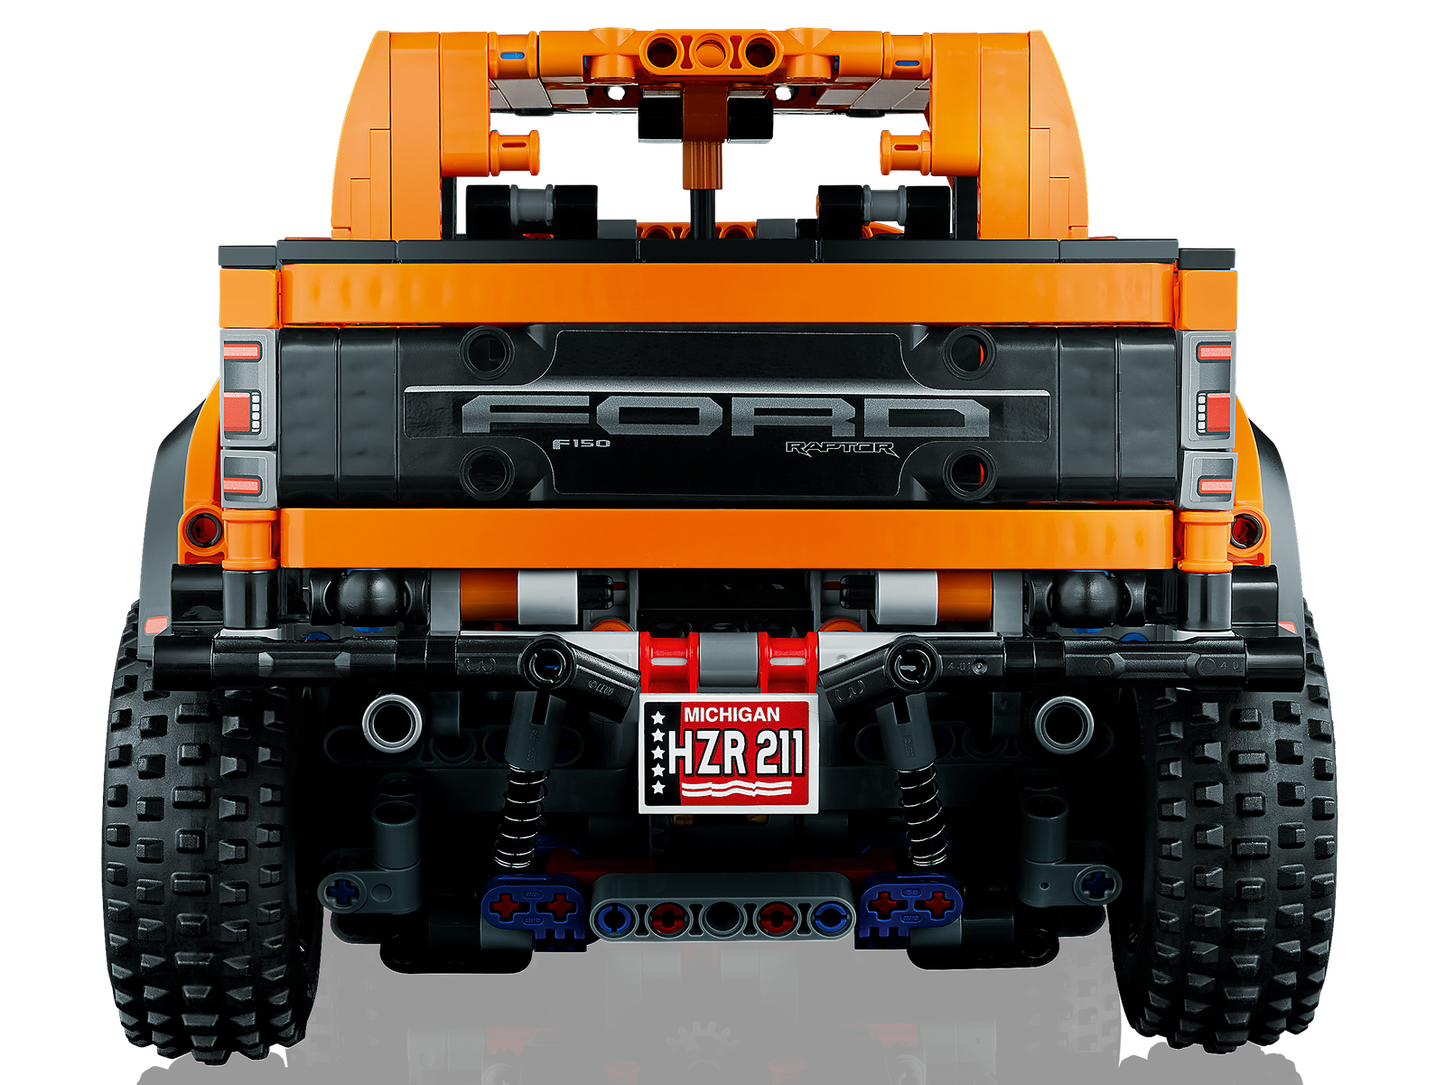 Lego Technic Ford F-150 Raptor